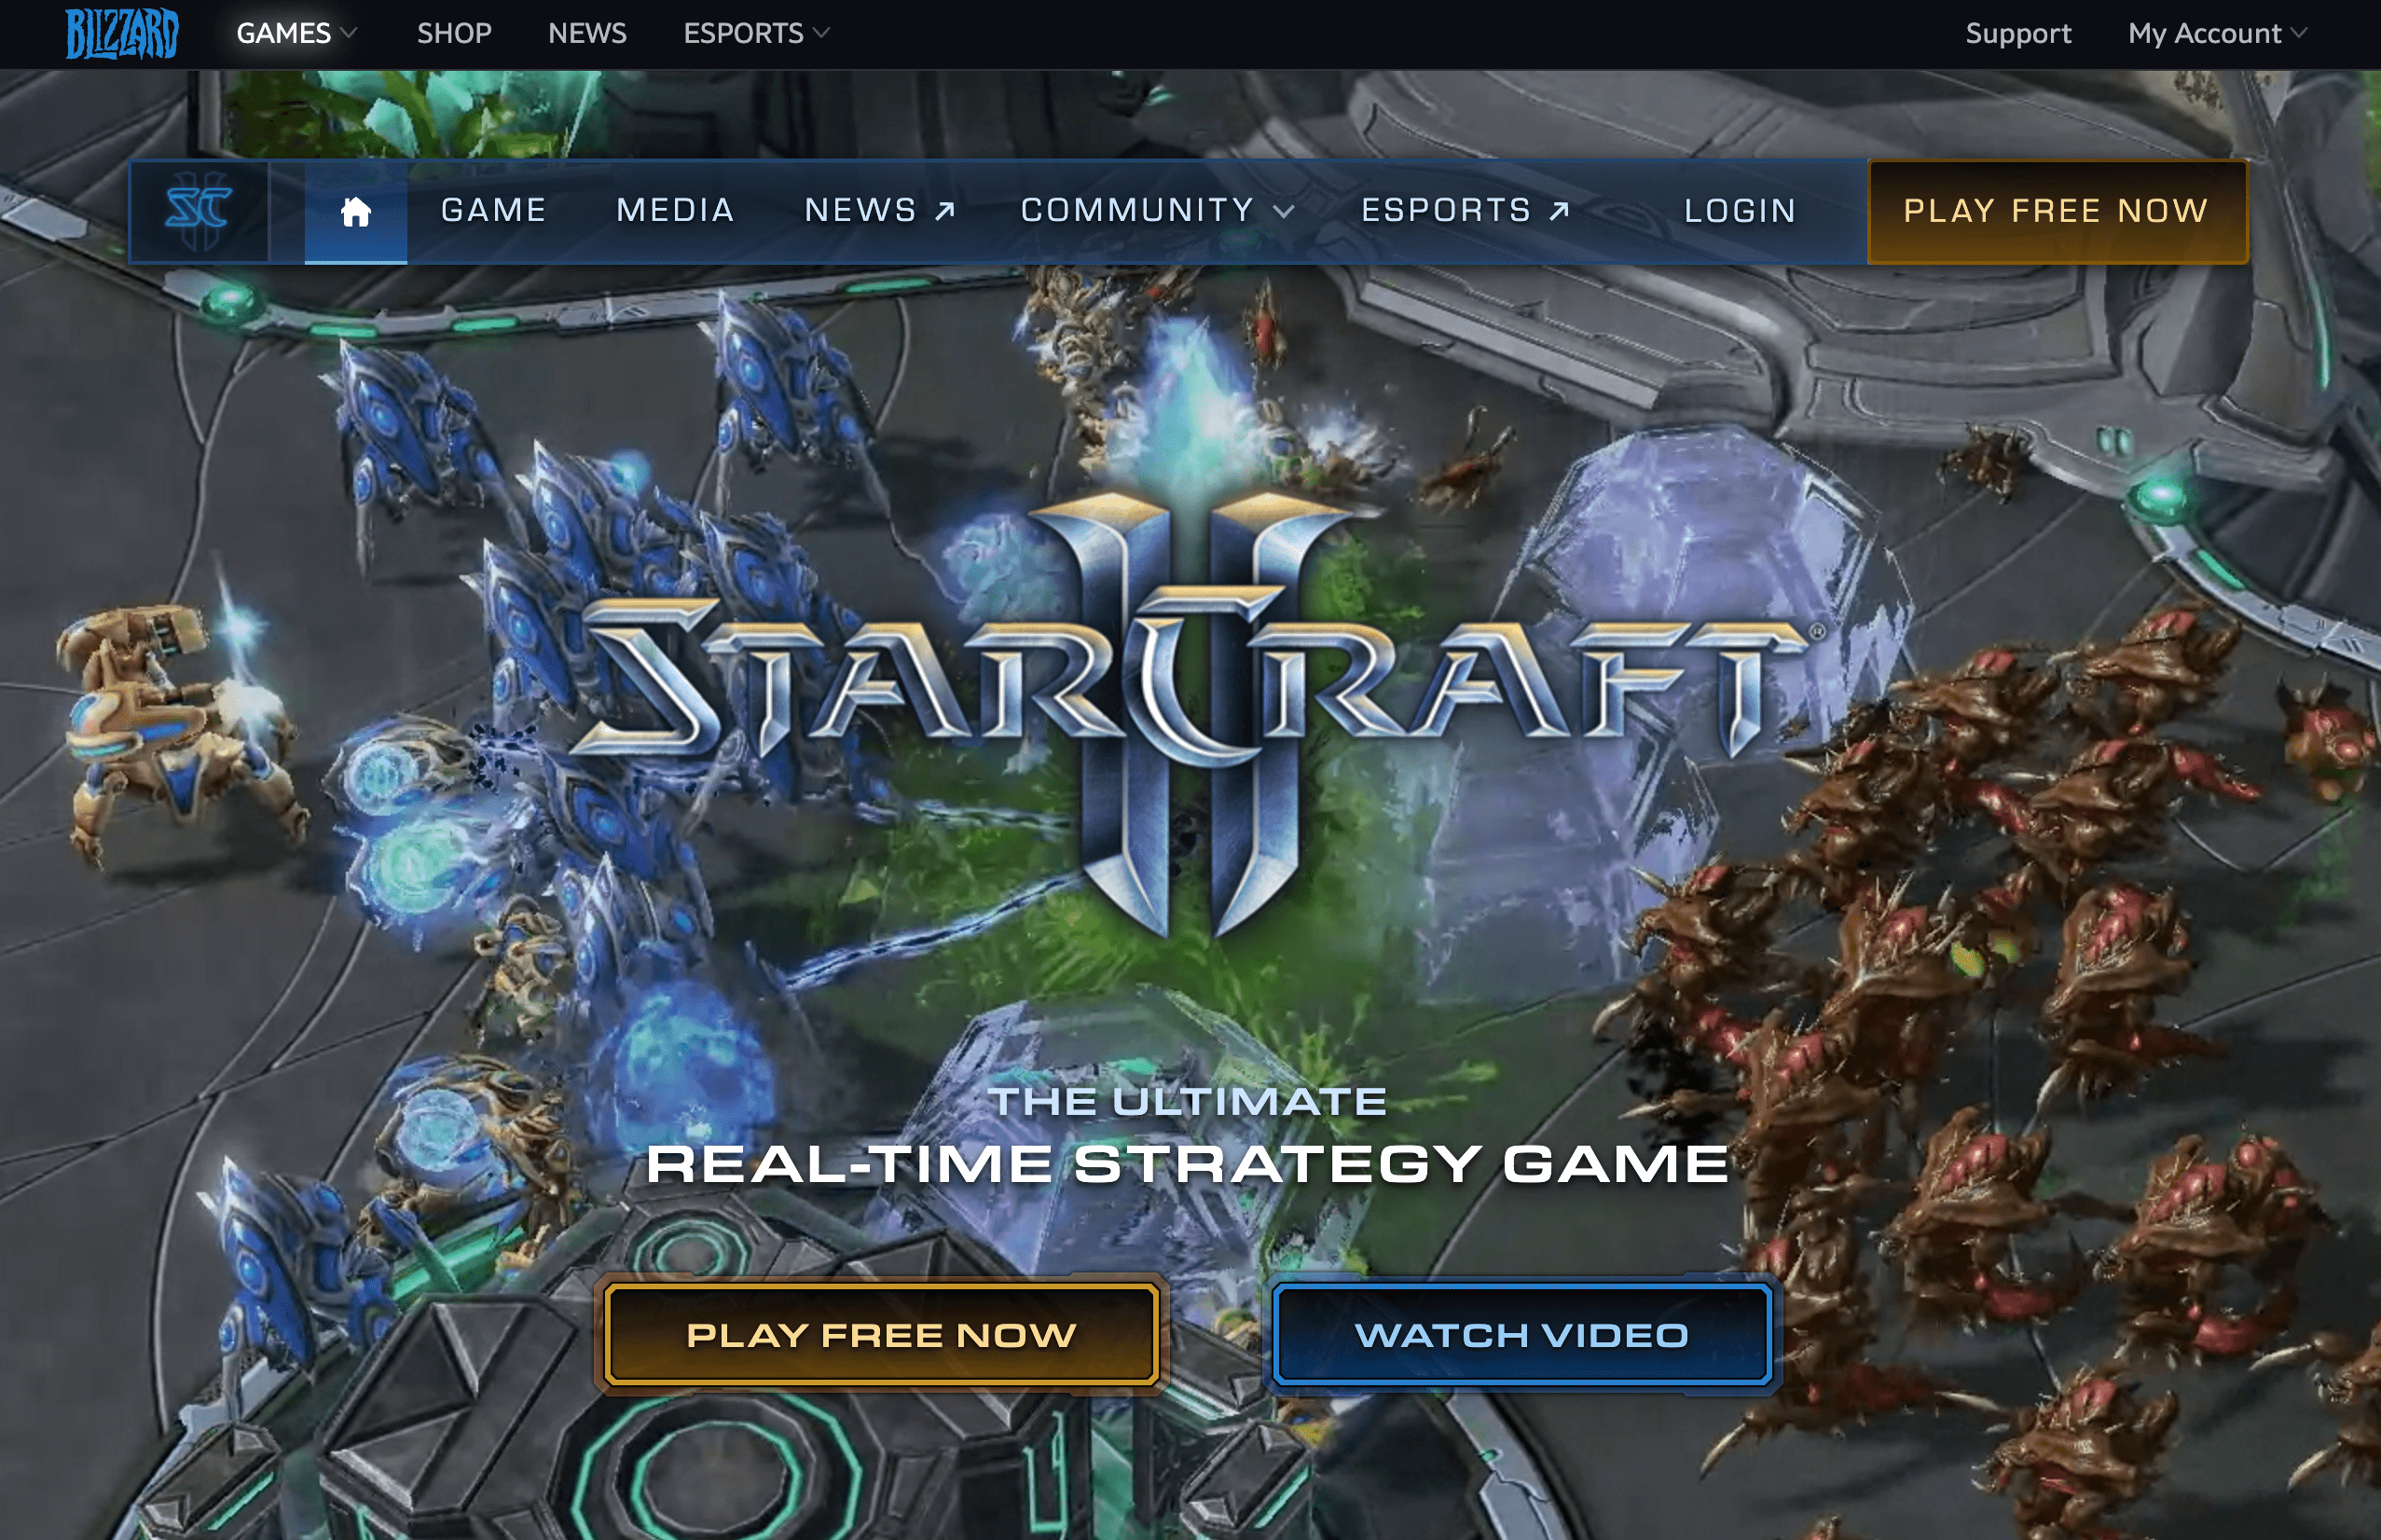 A screenshot from Blizzard's official SC2 website